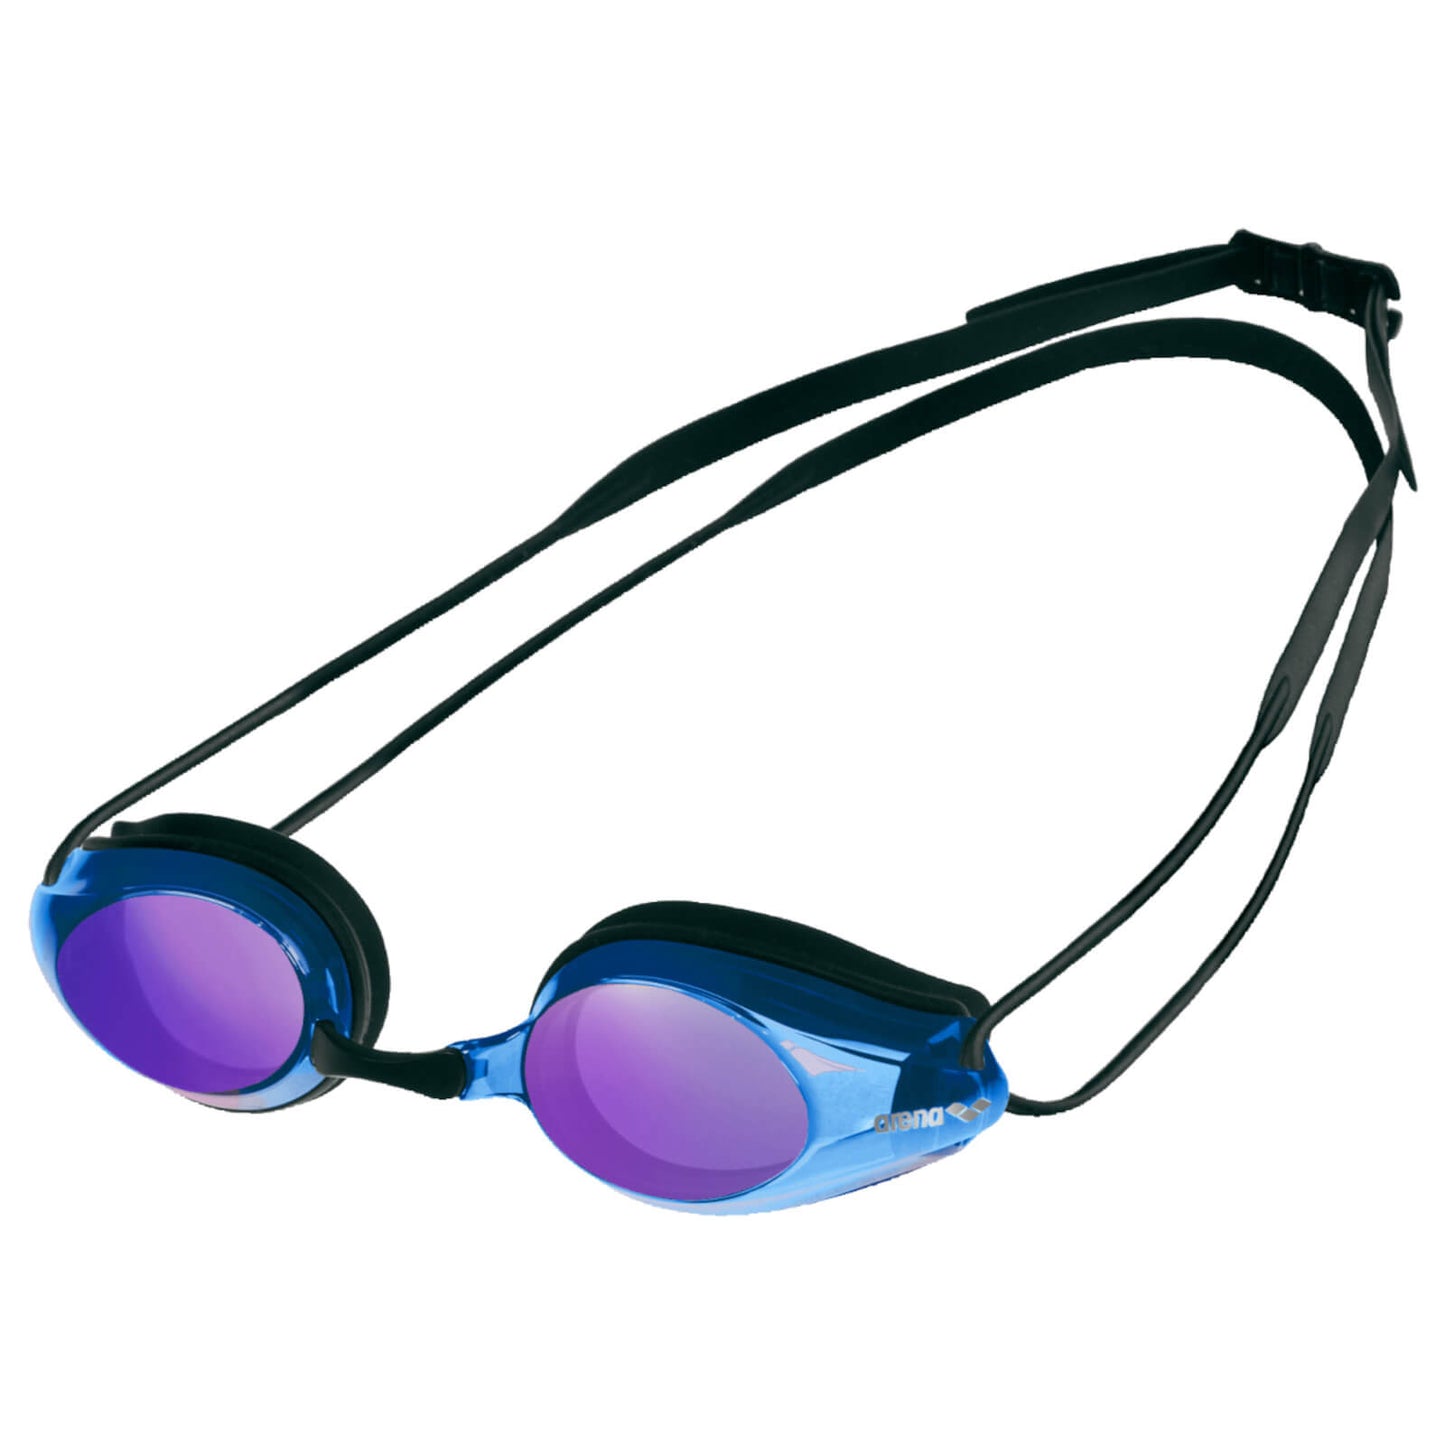 Men's Swimming Goggles Arena Tracks Mirrored Black/Blue